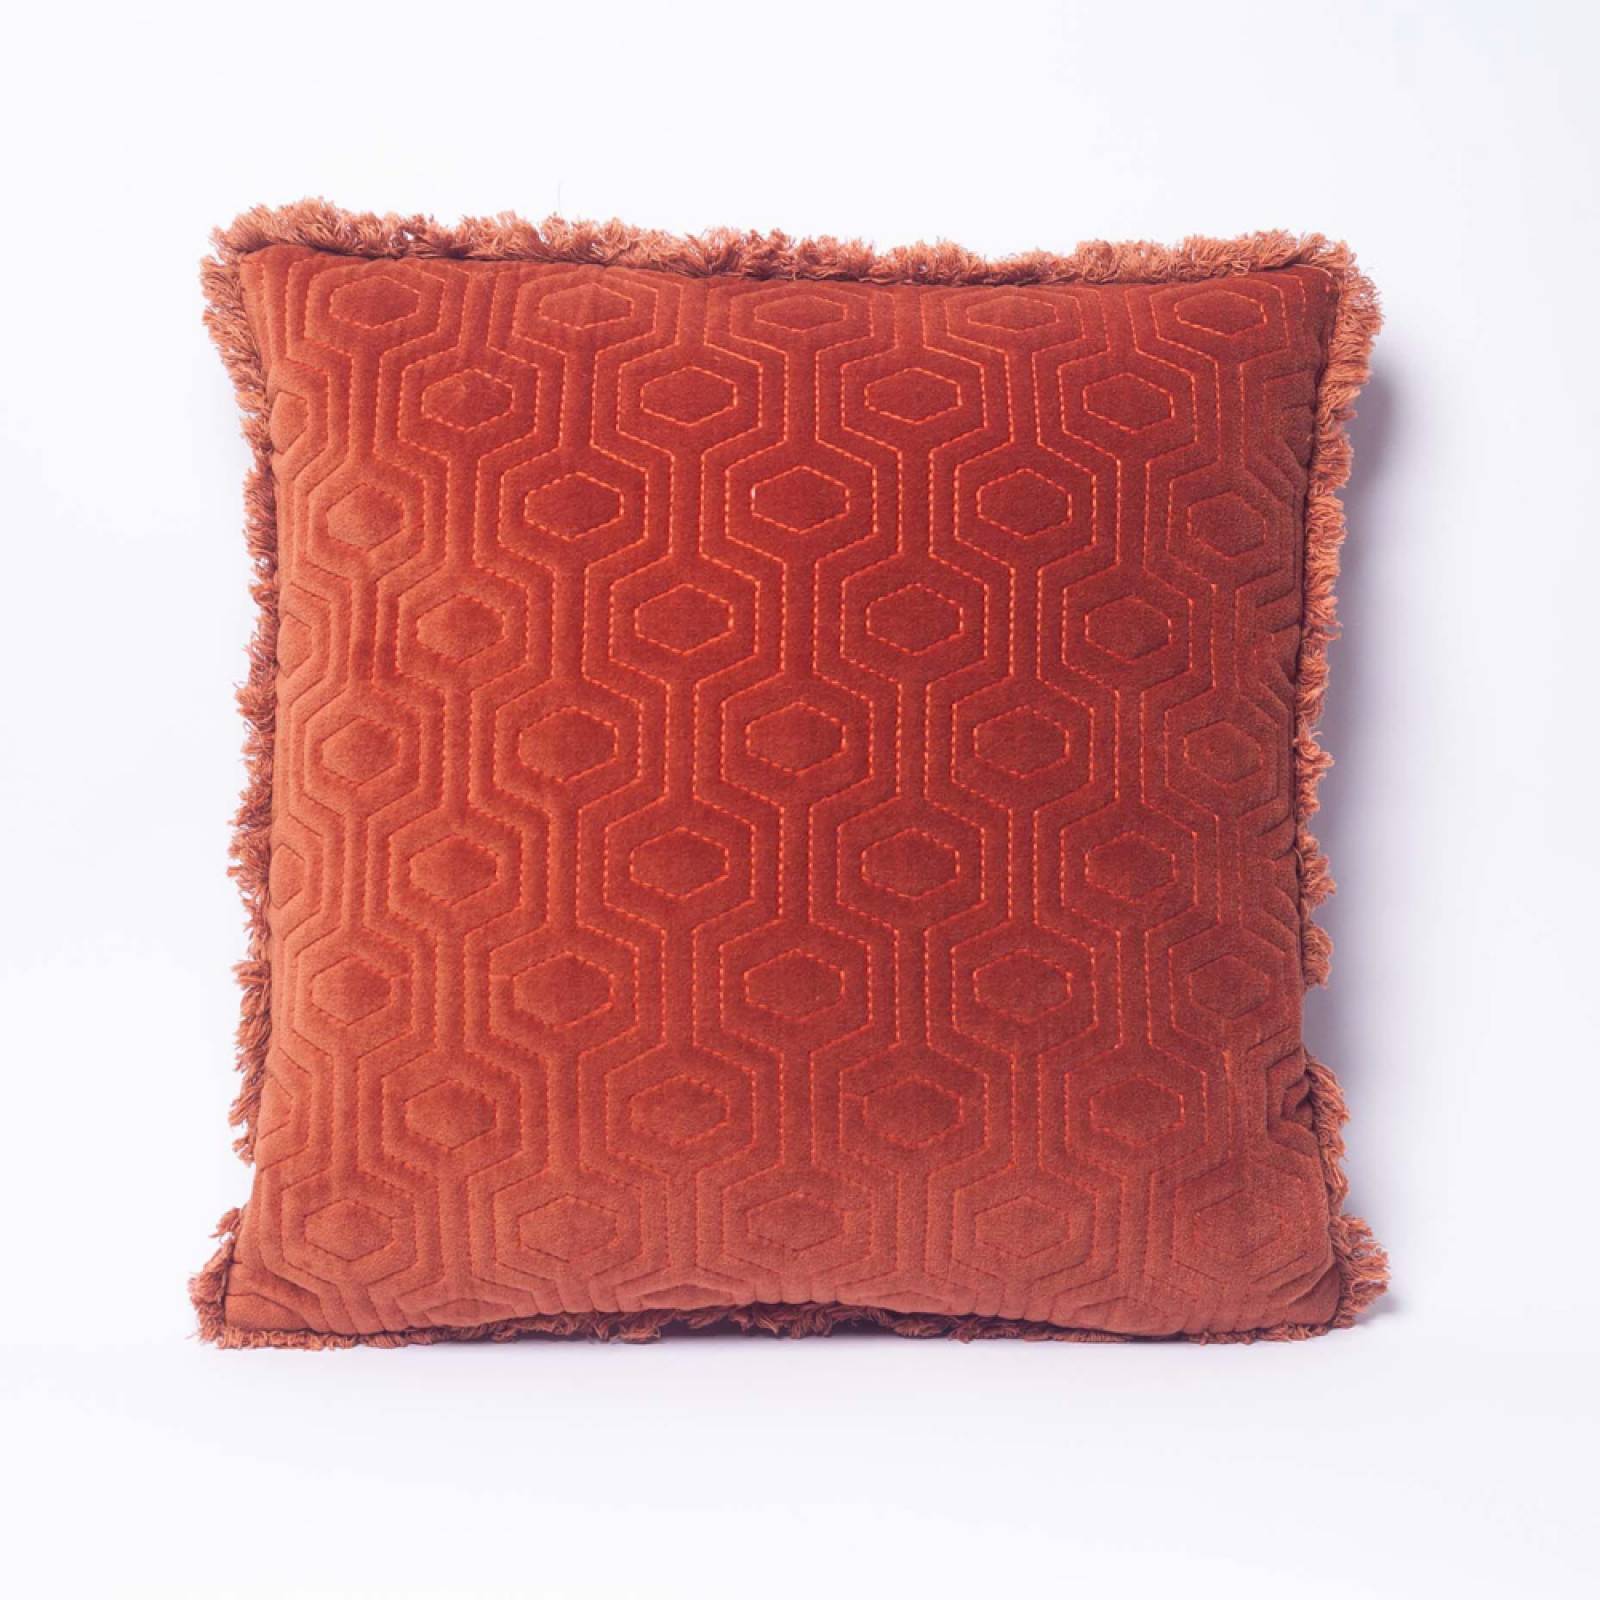 Square Patterned Orange Cushion With Fringing 45x45cm